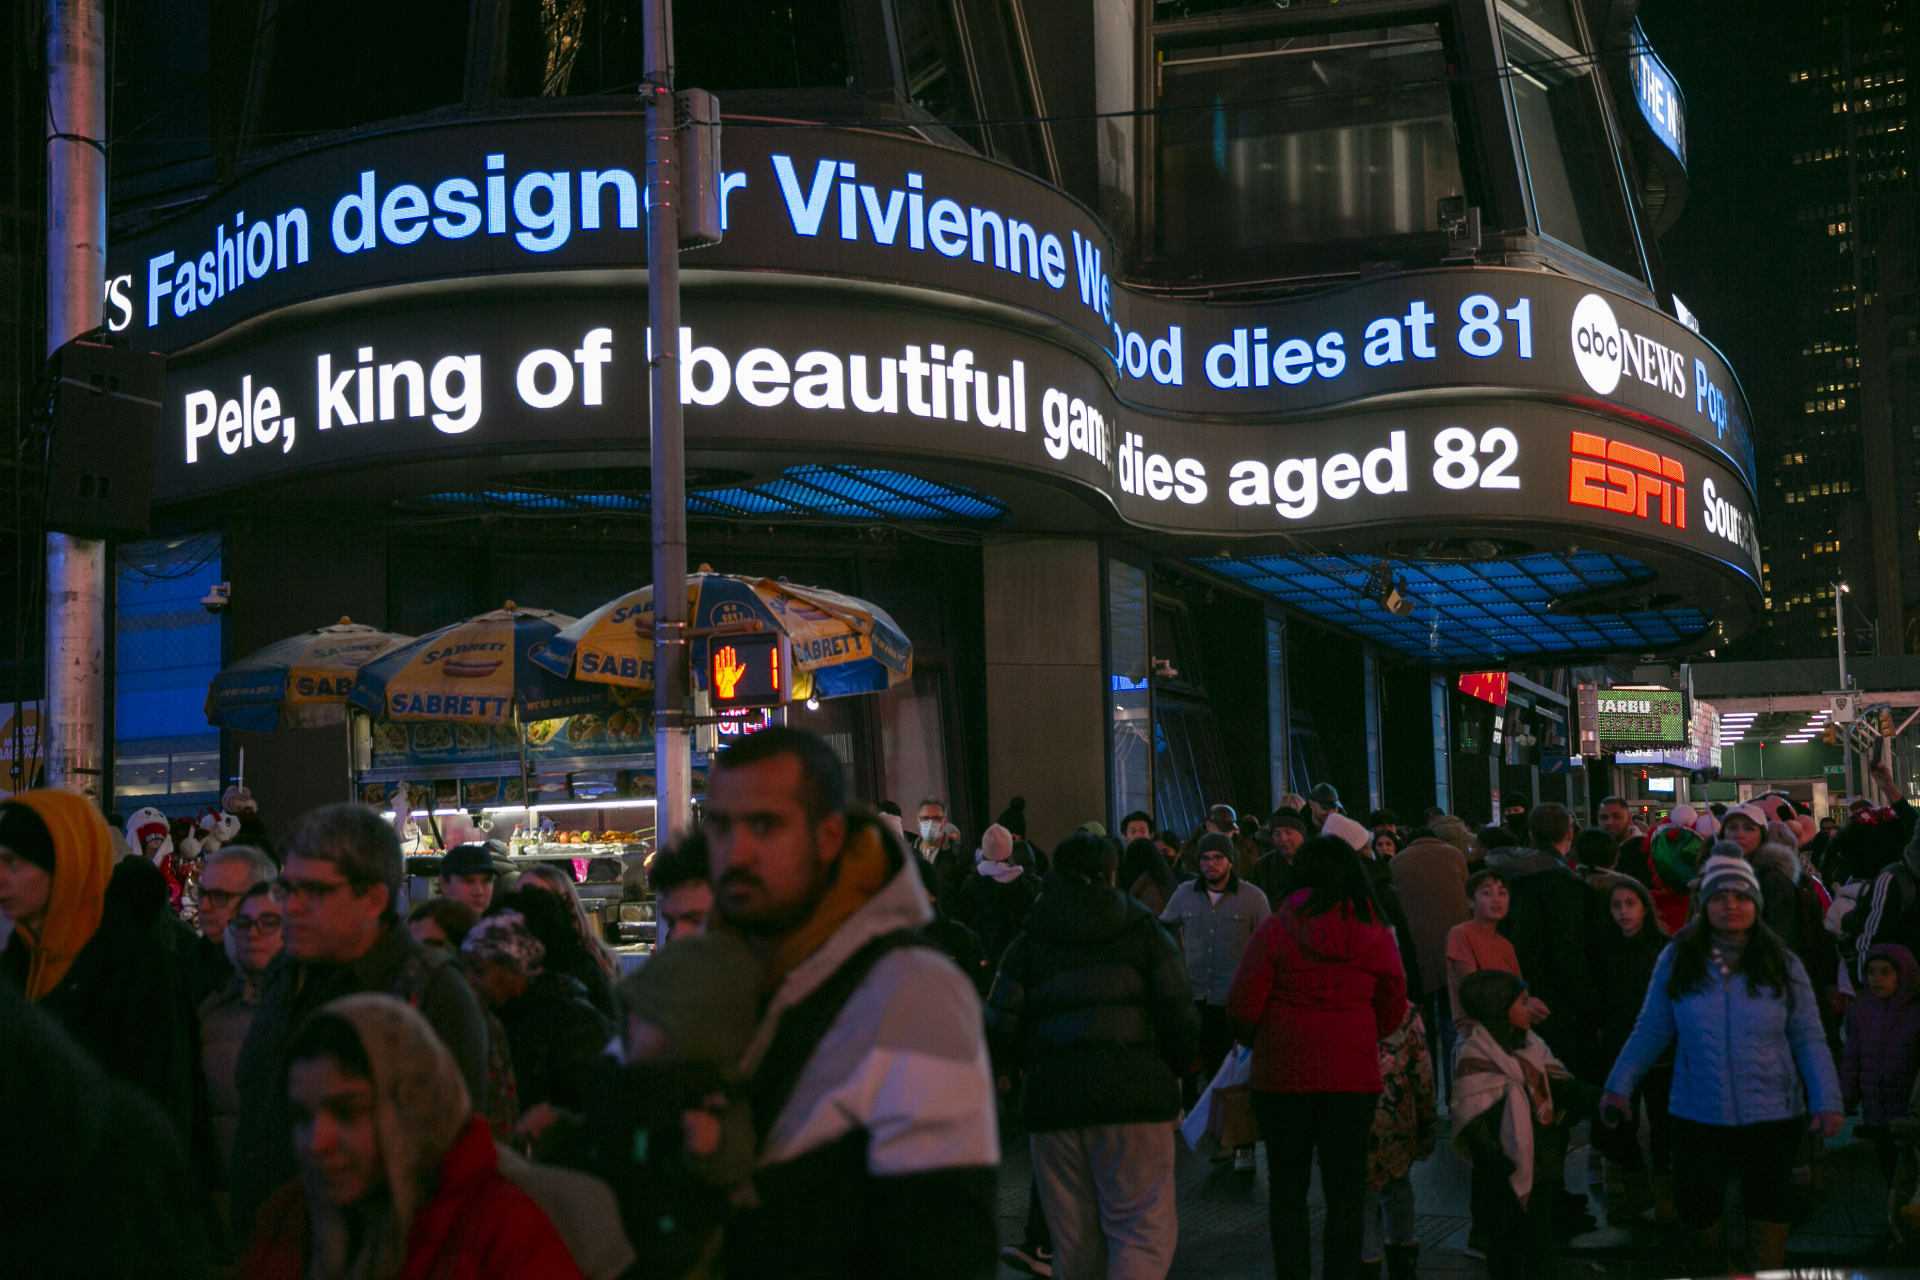 Oznámení o Pelého smrti si lidé přečetli i na Times Square v New Yorku.